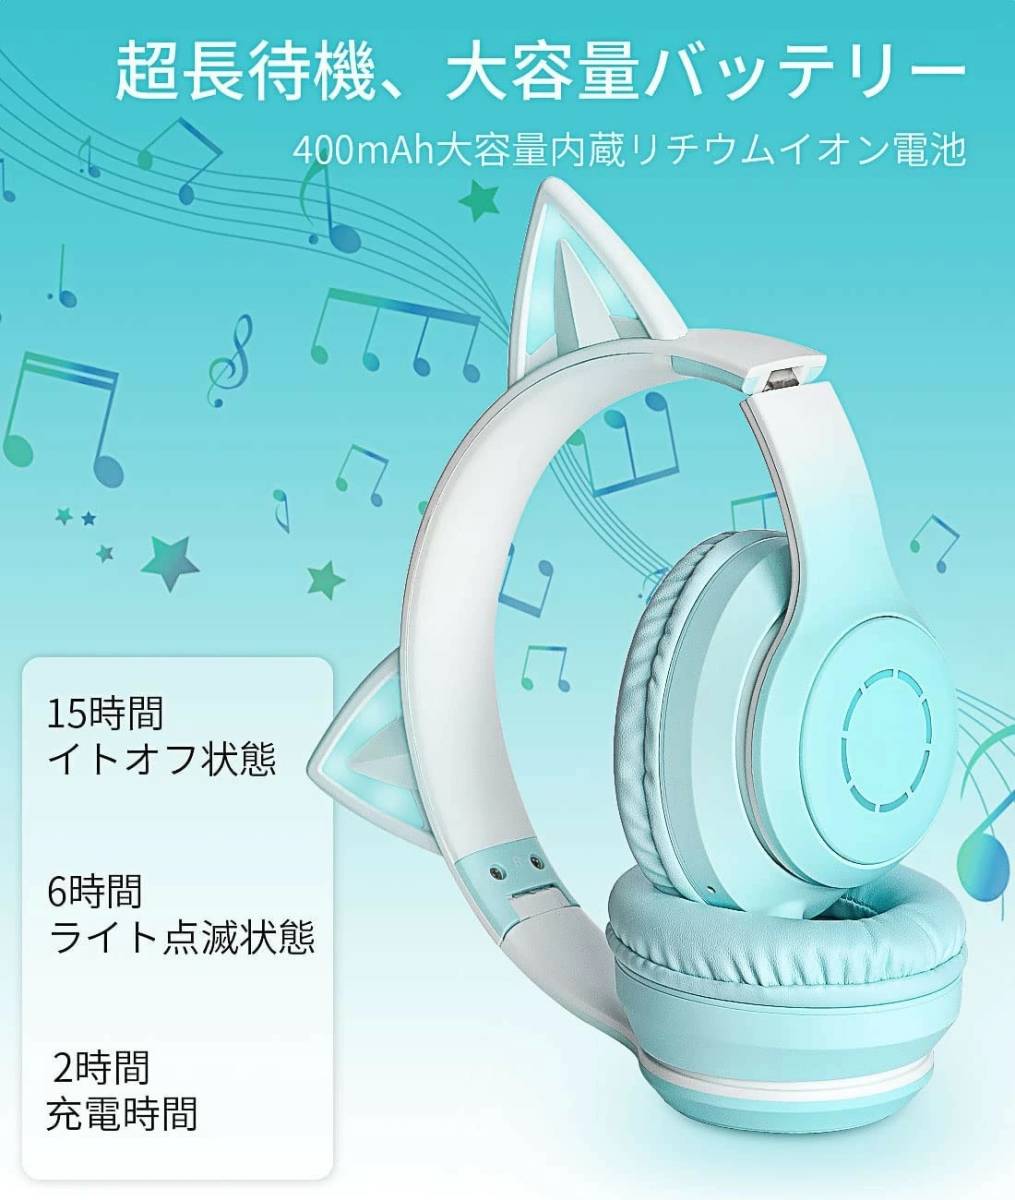 猫耳 ヘッドホン グリーン 可愛い 無線 対応 Bluetooth LED 虹色発光 ワイヤレス ヘッドフォン ヘッドホン ヘッドセット スマホ_画像5